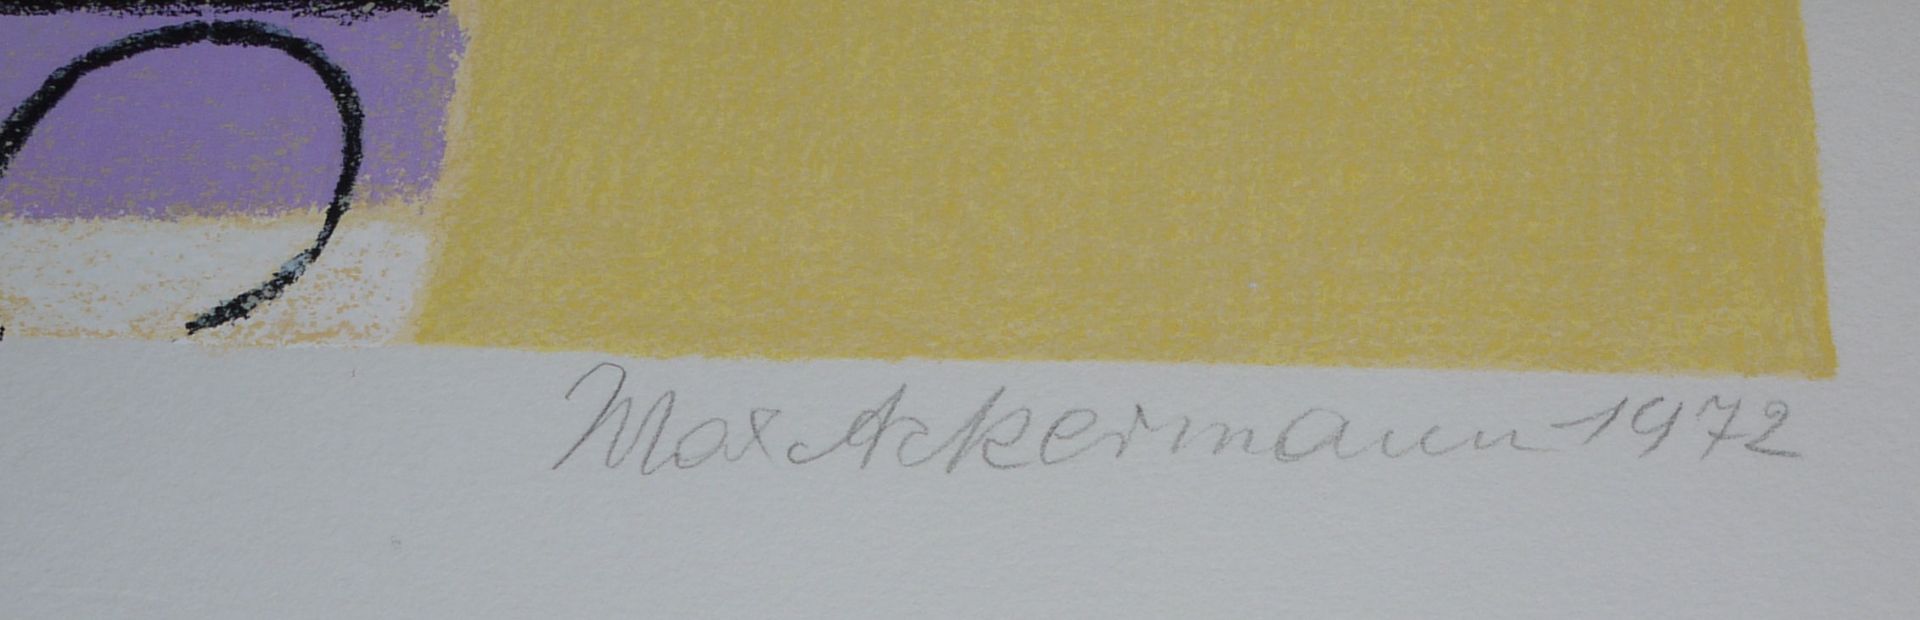 Max Ackermann, "Strahlende Pforte" und "Mauerbild", zwei signierte Farbserigraphien von 1972 und 19 - Bild 4 aus 4